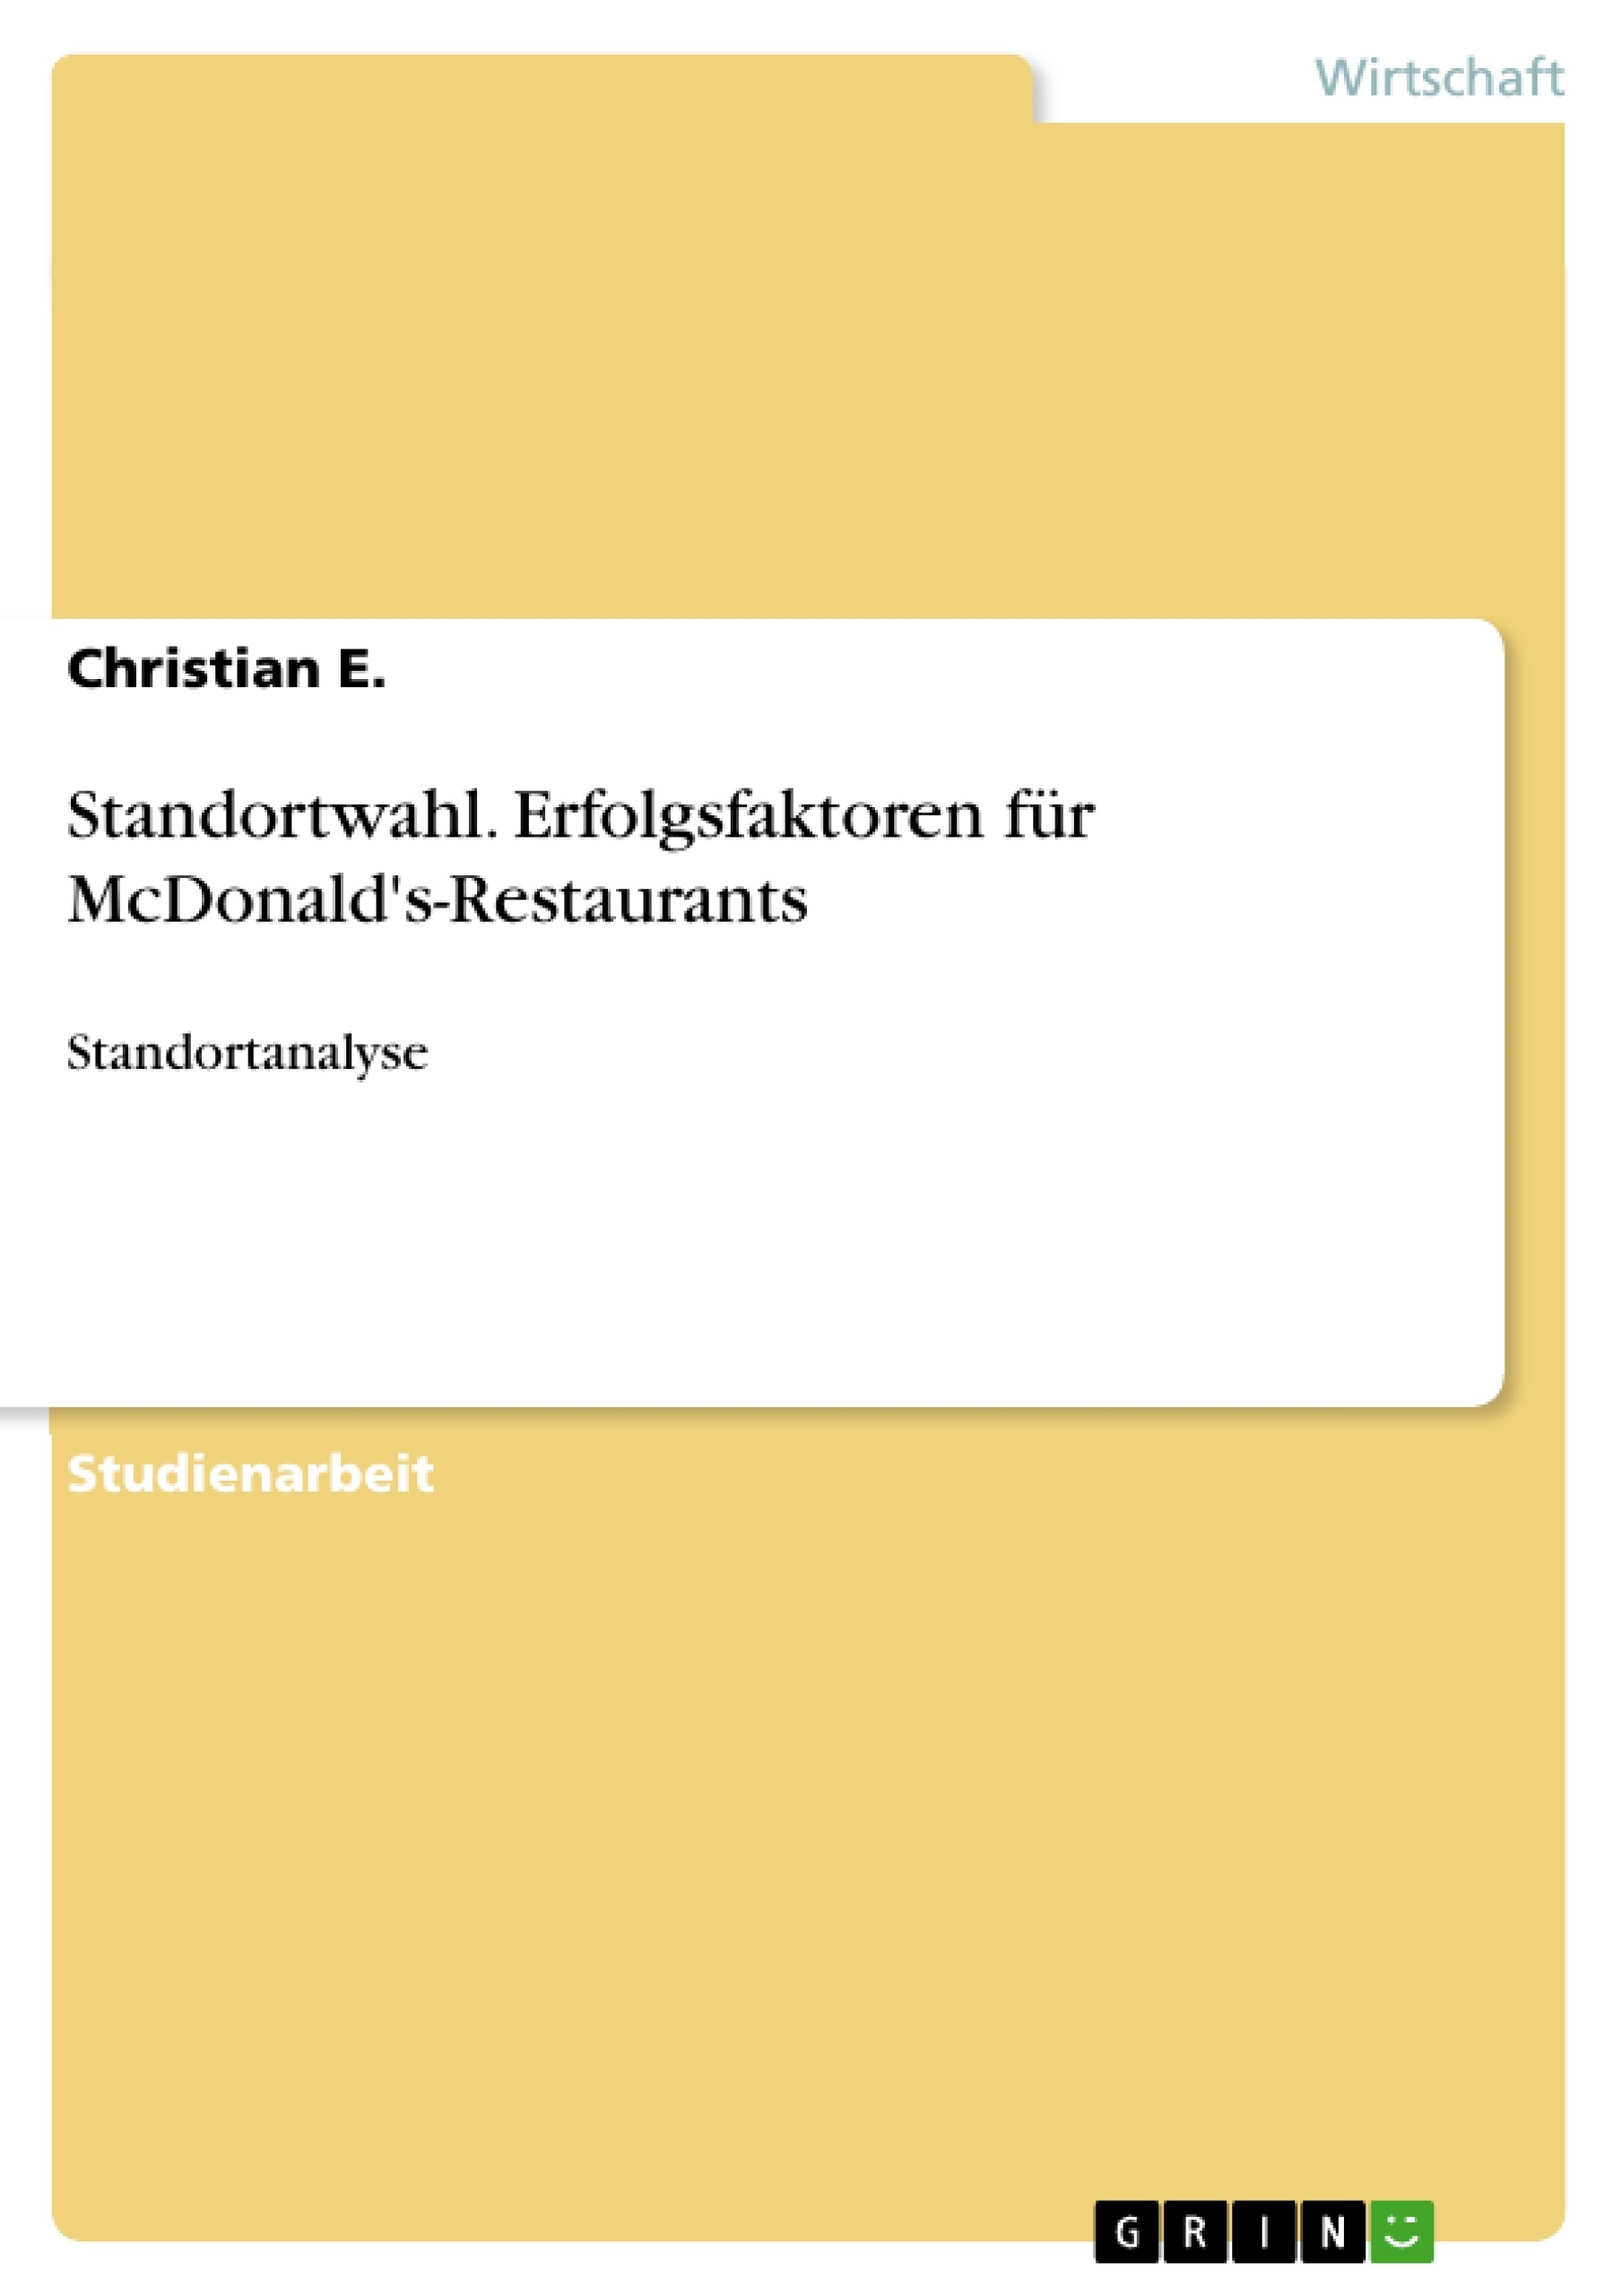 Baden Baden Restaurant